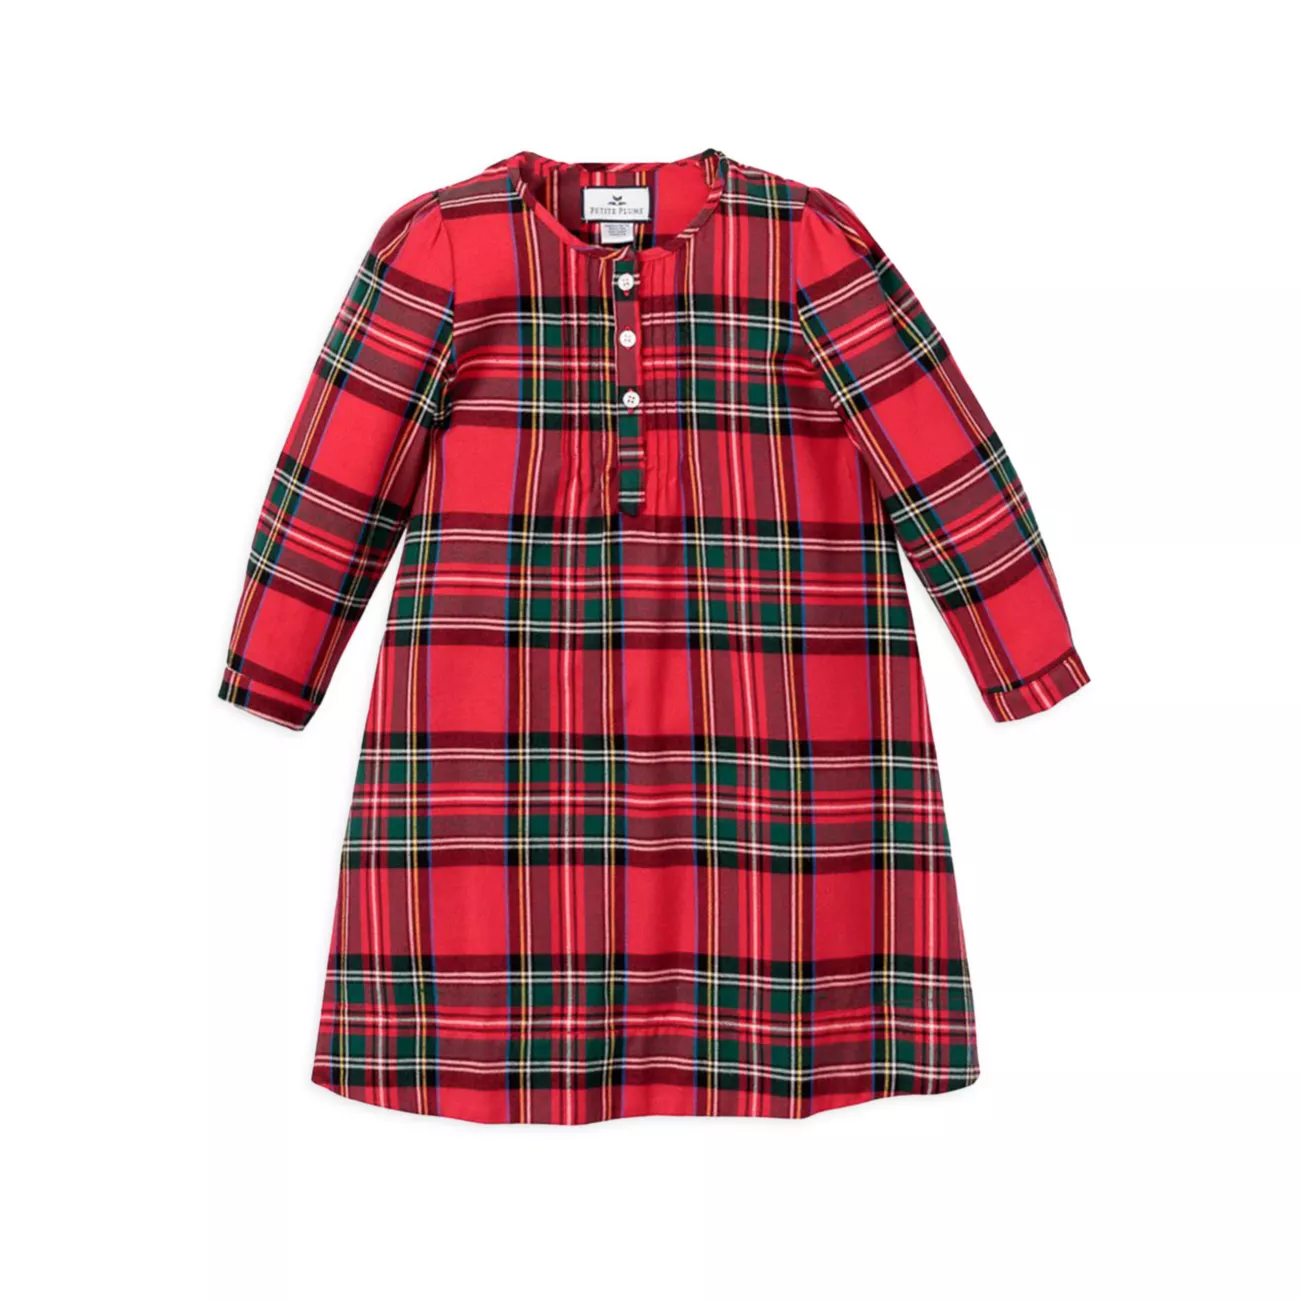 Для маленьких девочек, для маленьких девочек и для маленьких девочек; Ночная рубашка Beatrice Imperial Tartan для девочек Petite Plume